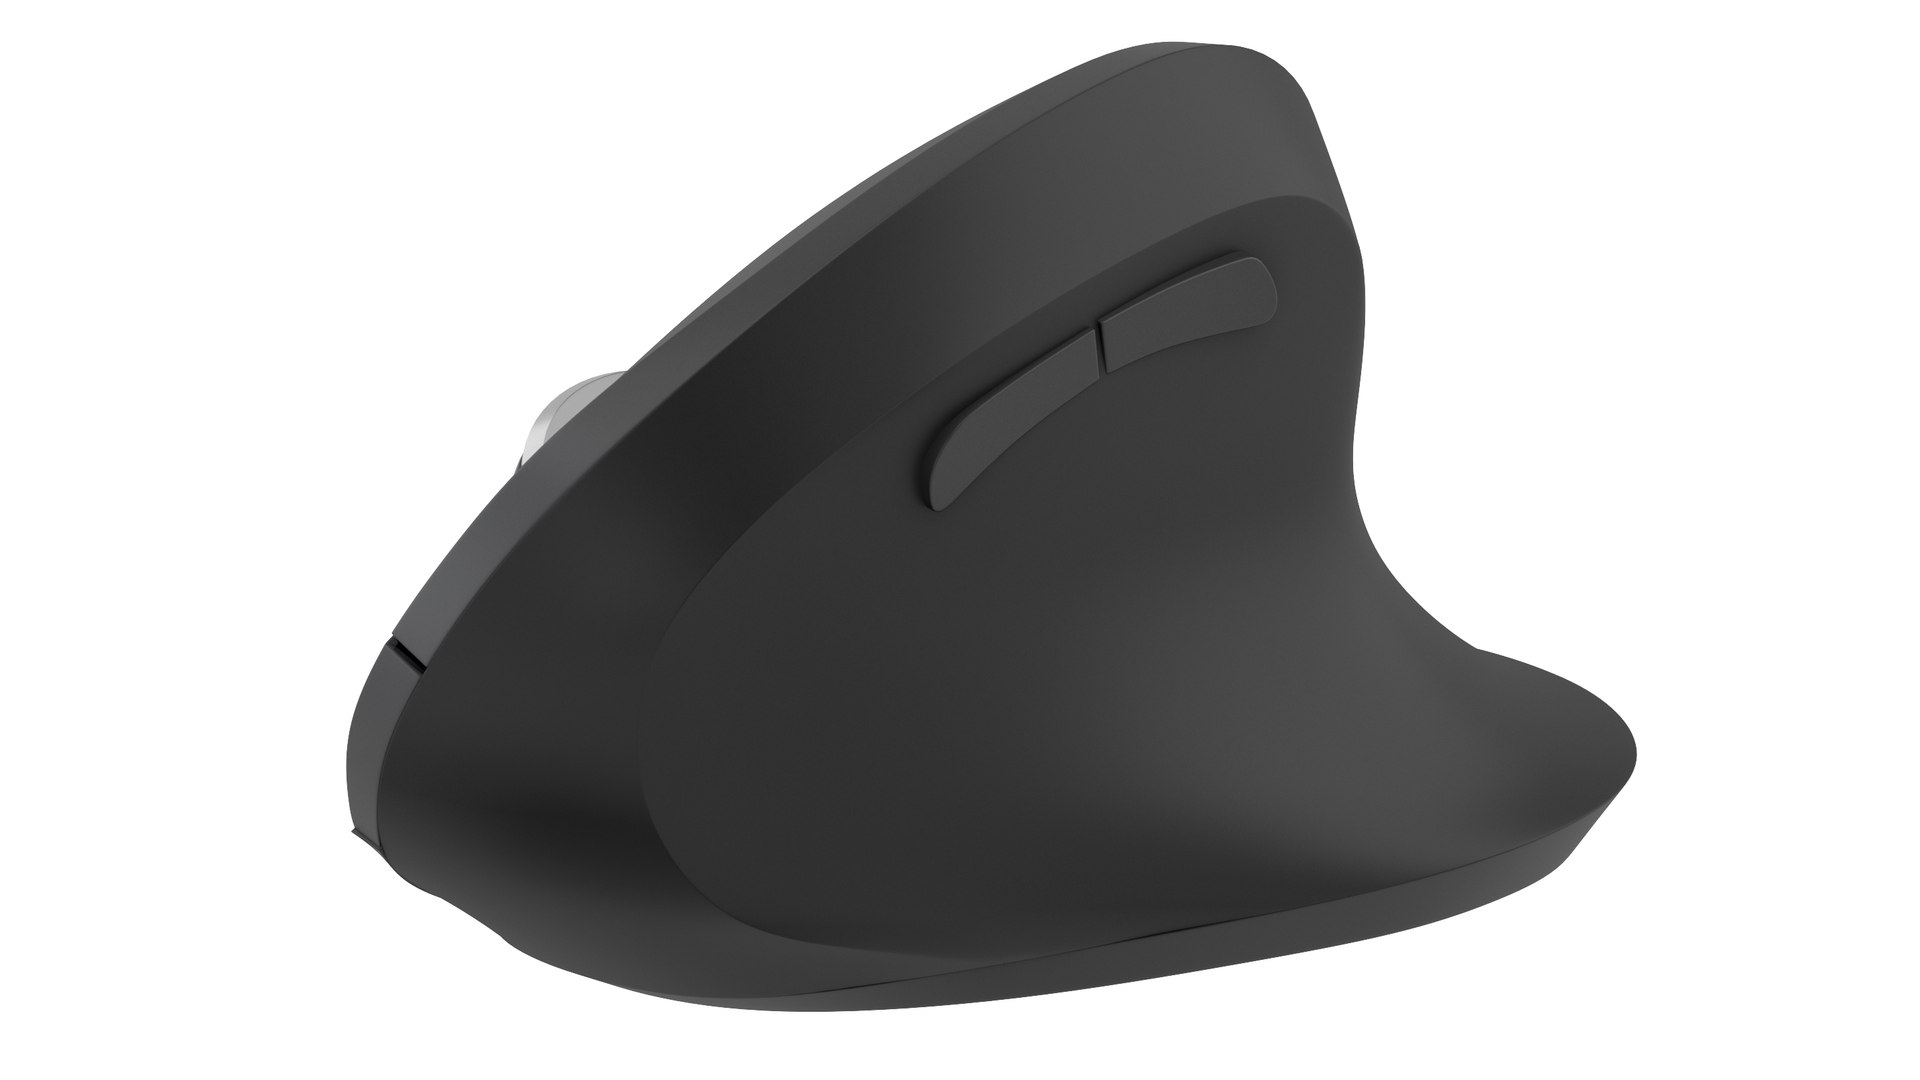 PC Ergonomic Mouse 3D Model - TurboSquid 2068779